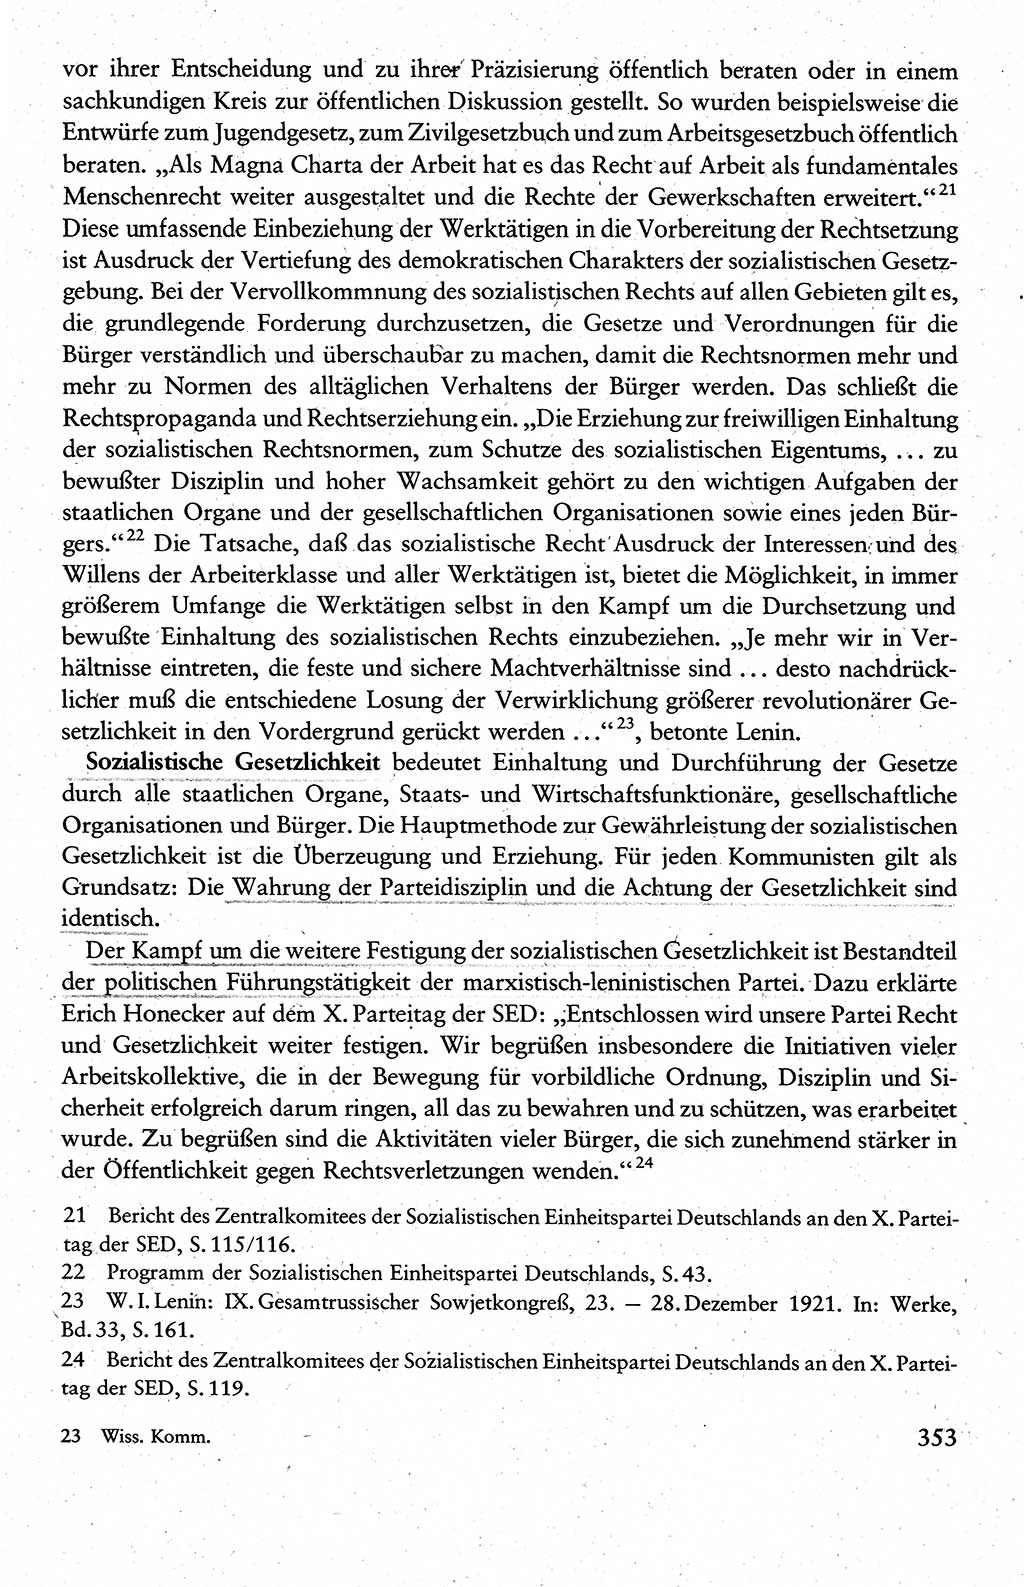 Wissenschaftlicher Kommunismus [Deutsche Demokratische Republik (DDR)], Lehrbuch für das marxistisch-leninistische Grundlagenstudium 1983, Seite 353 (Wiss. Komm. DDR Lb. 1983, S. 353)